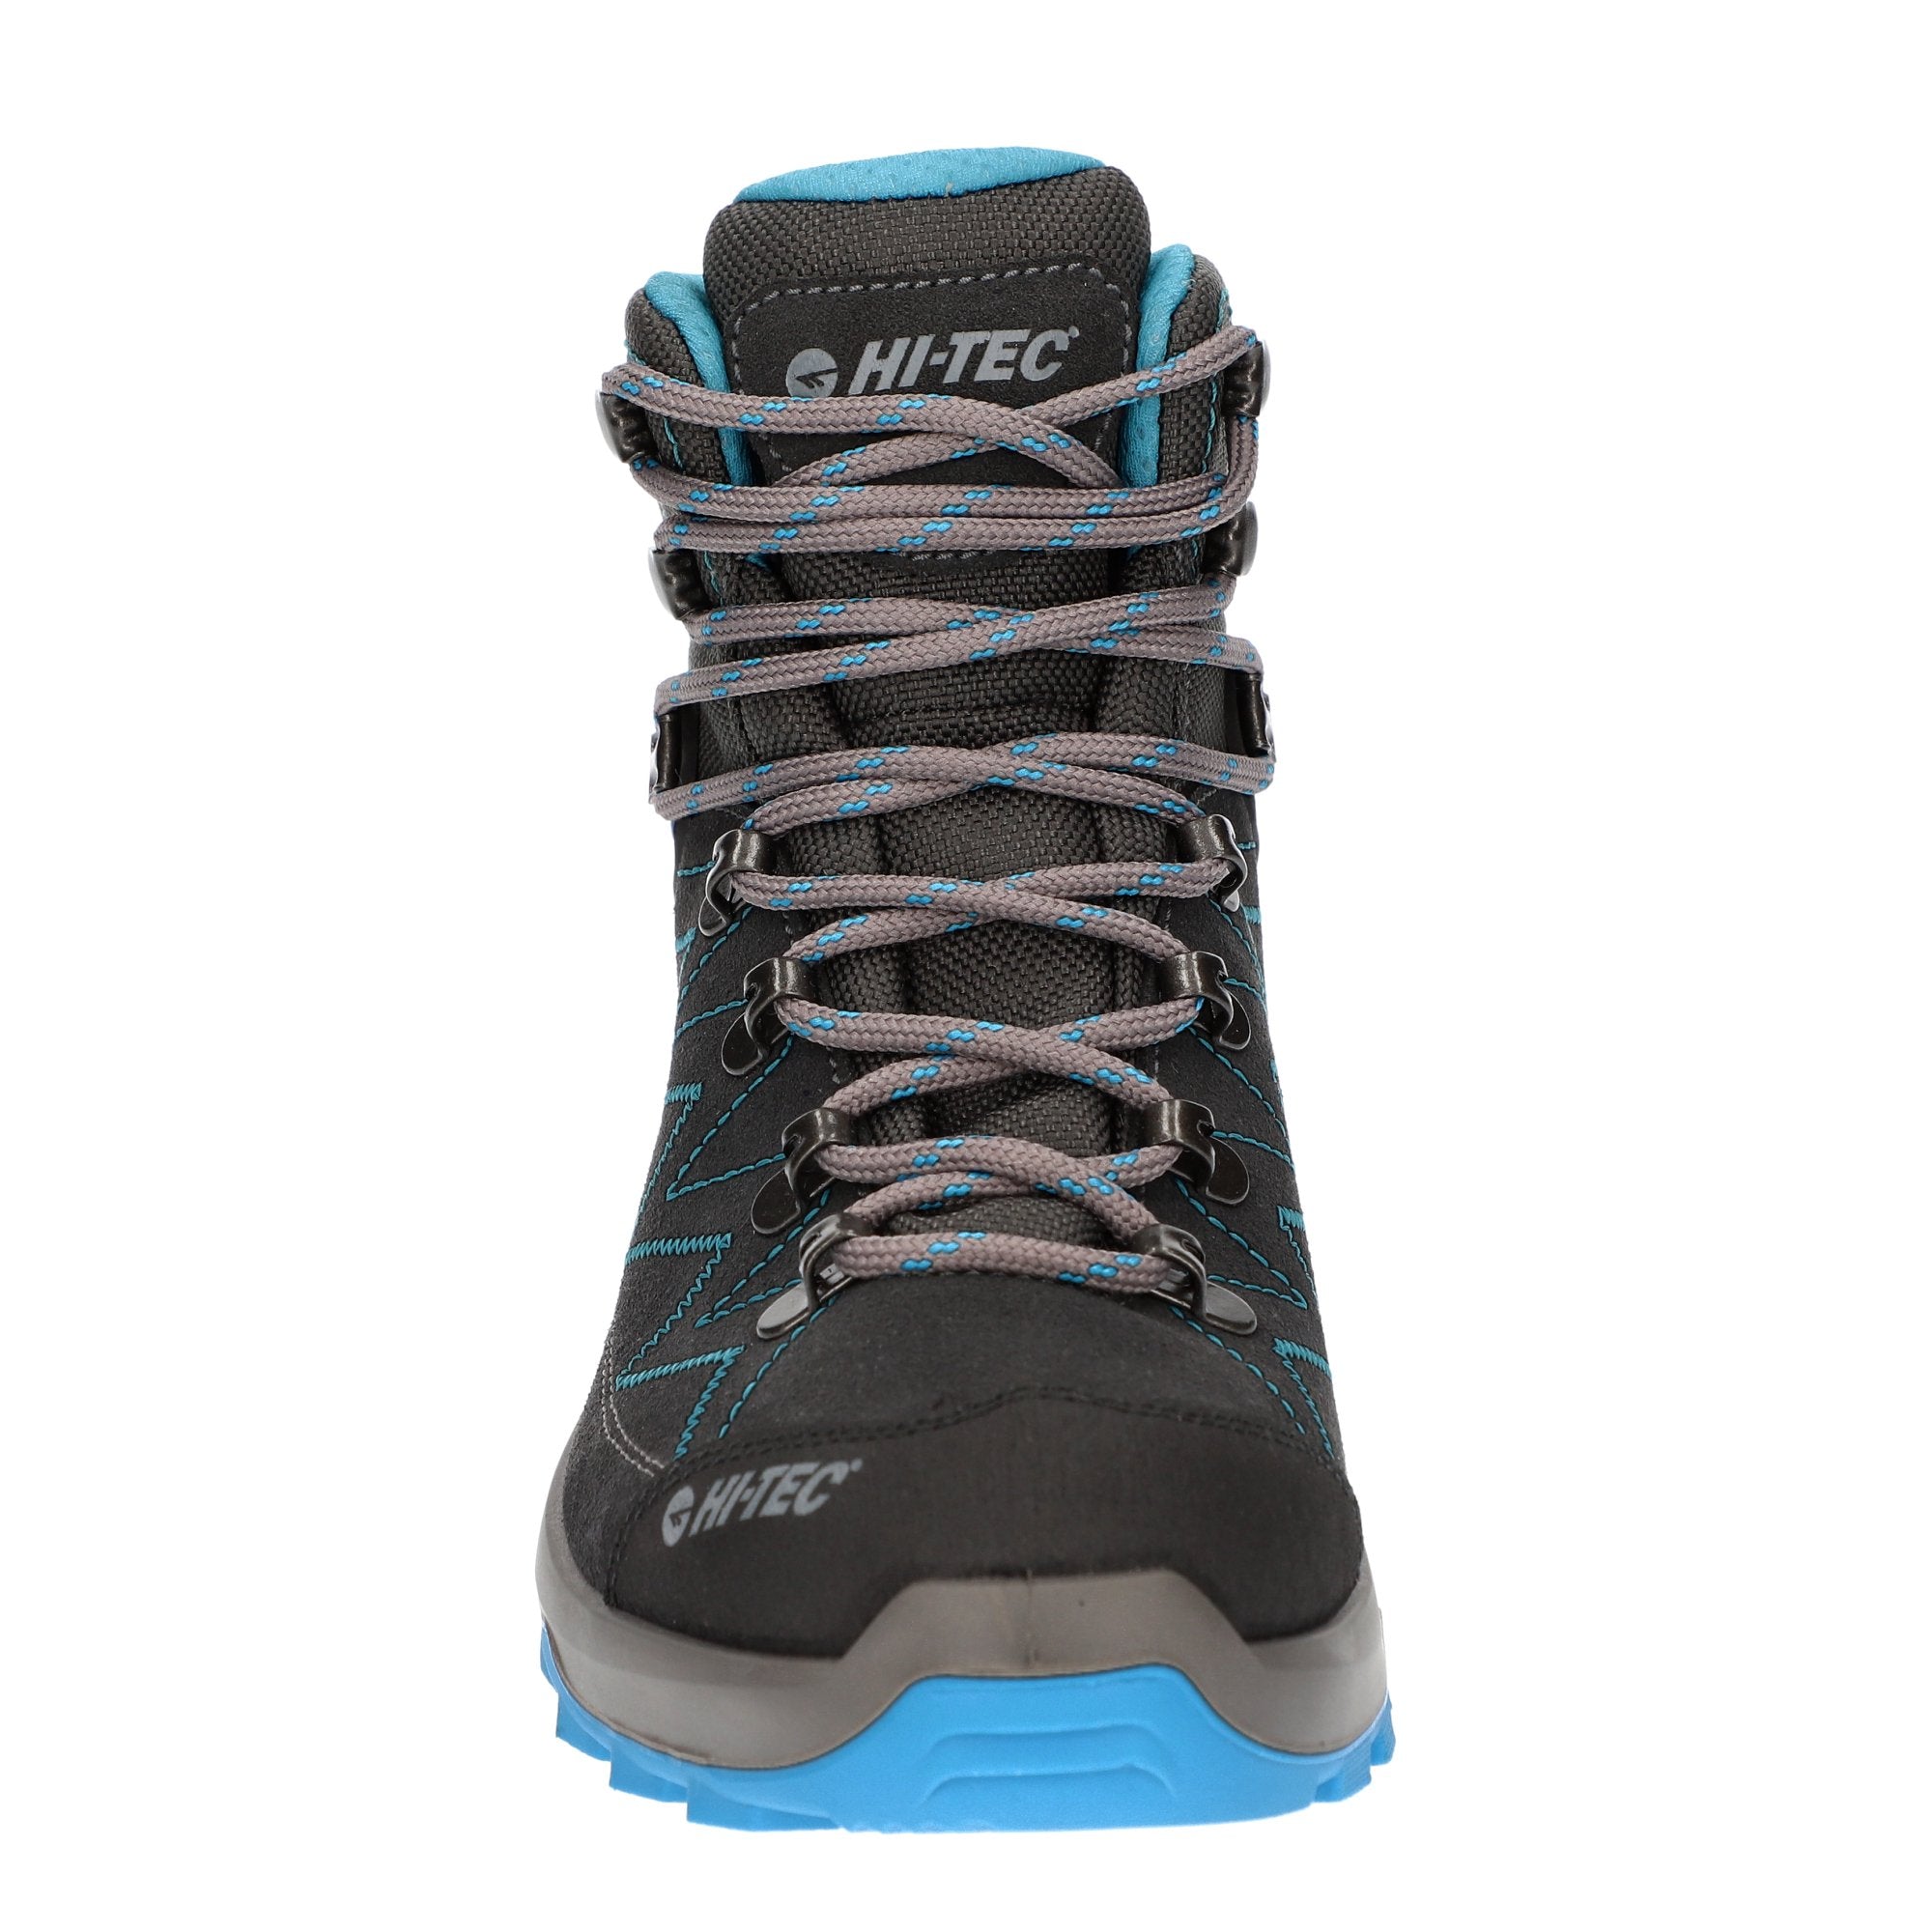 HI-TEC Sporthike Mid WP - Ladies Waterproof Hiking Boot .HI-TEC | Wisemans | Bantry | West Cork | Ireland